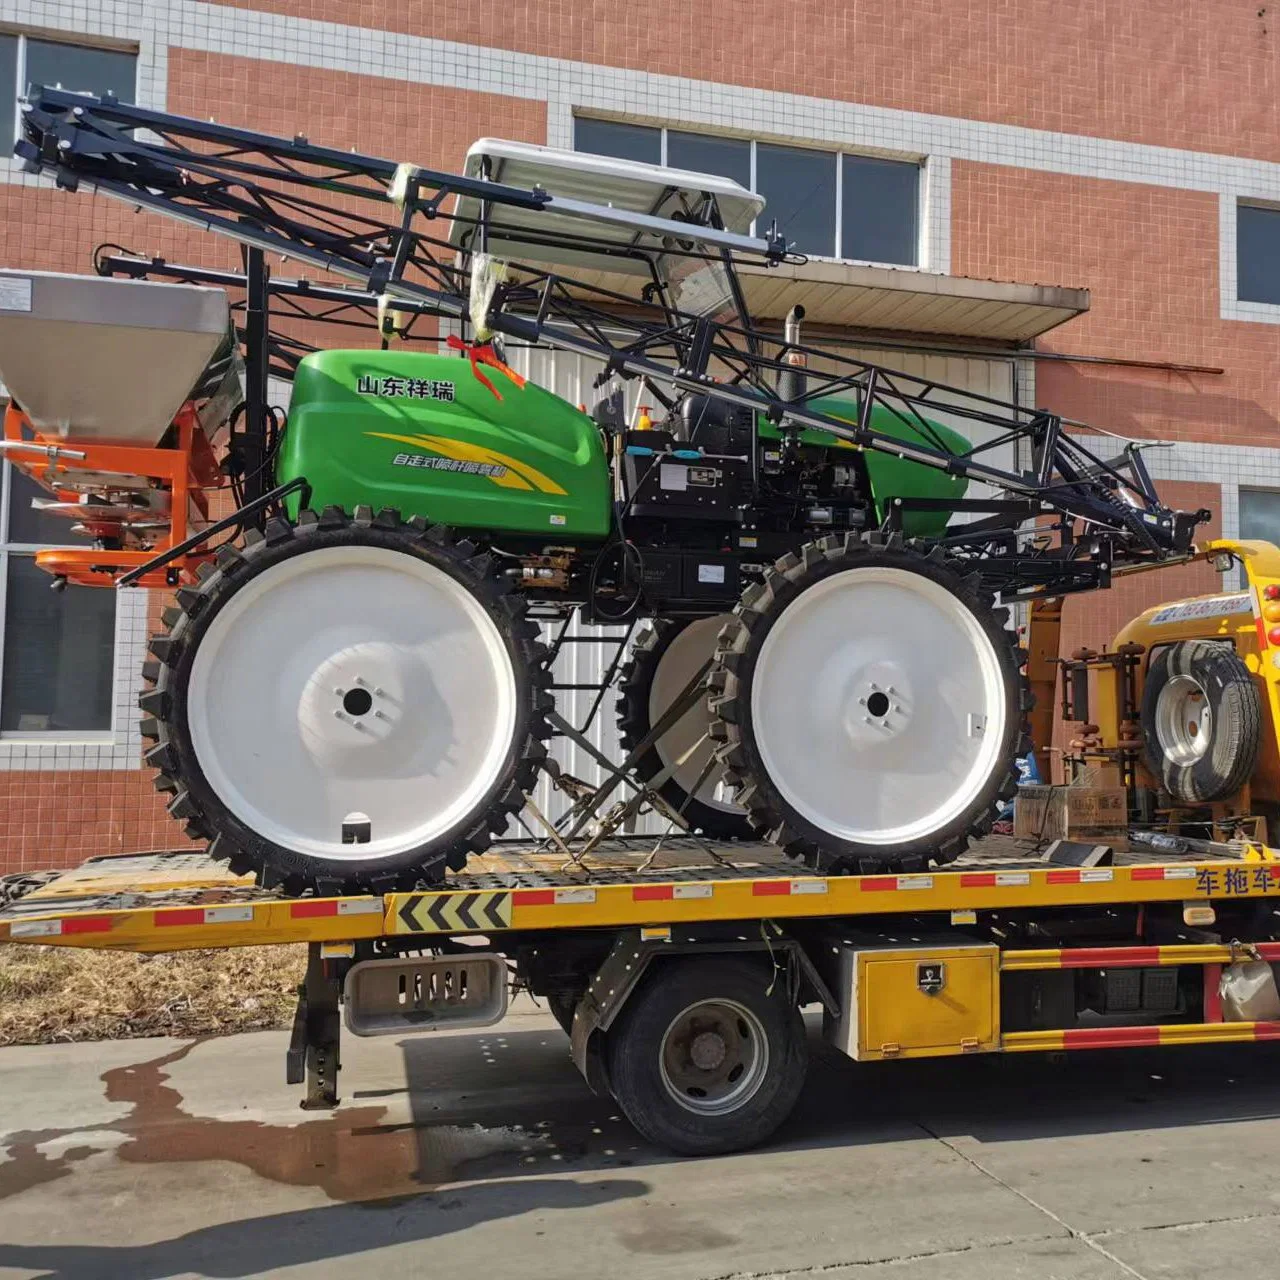 Tracteur sur pneus agricole chinois haute capacité 700 l à haut rendement Pulvérisateur à flèche monté pulvérisateurs agricoles automoteurs pulvérisateur à flèche UTV